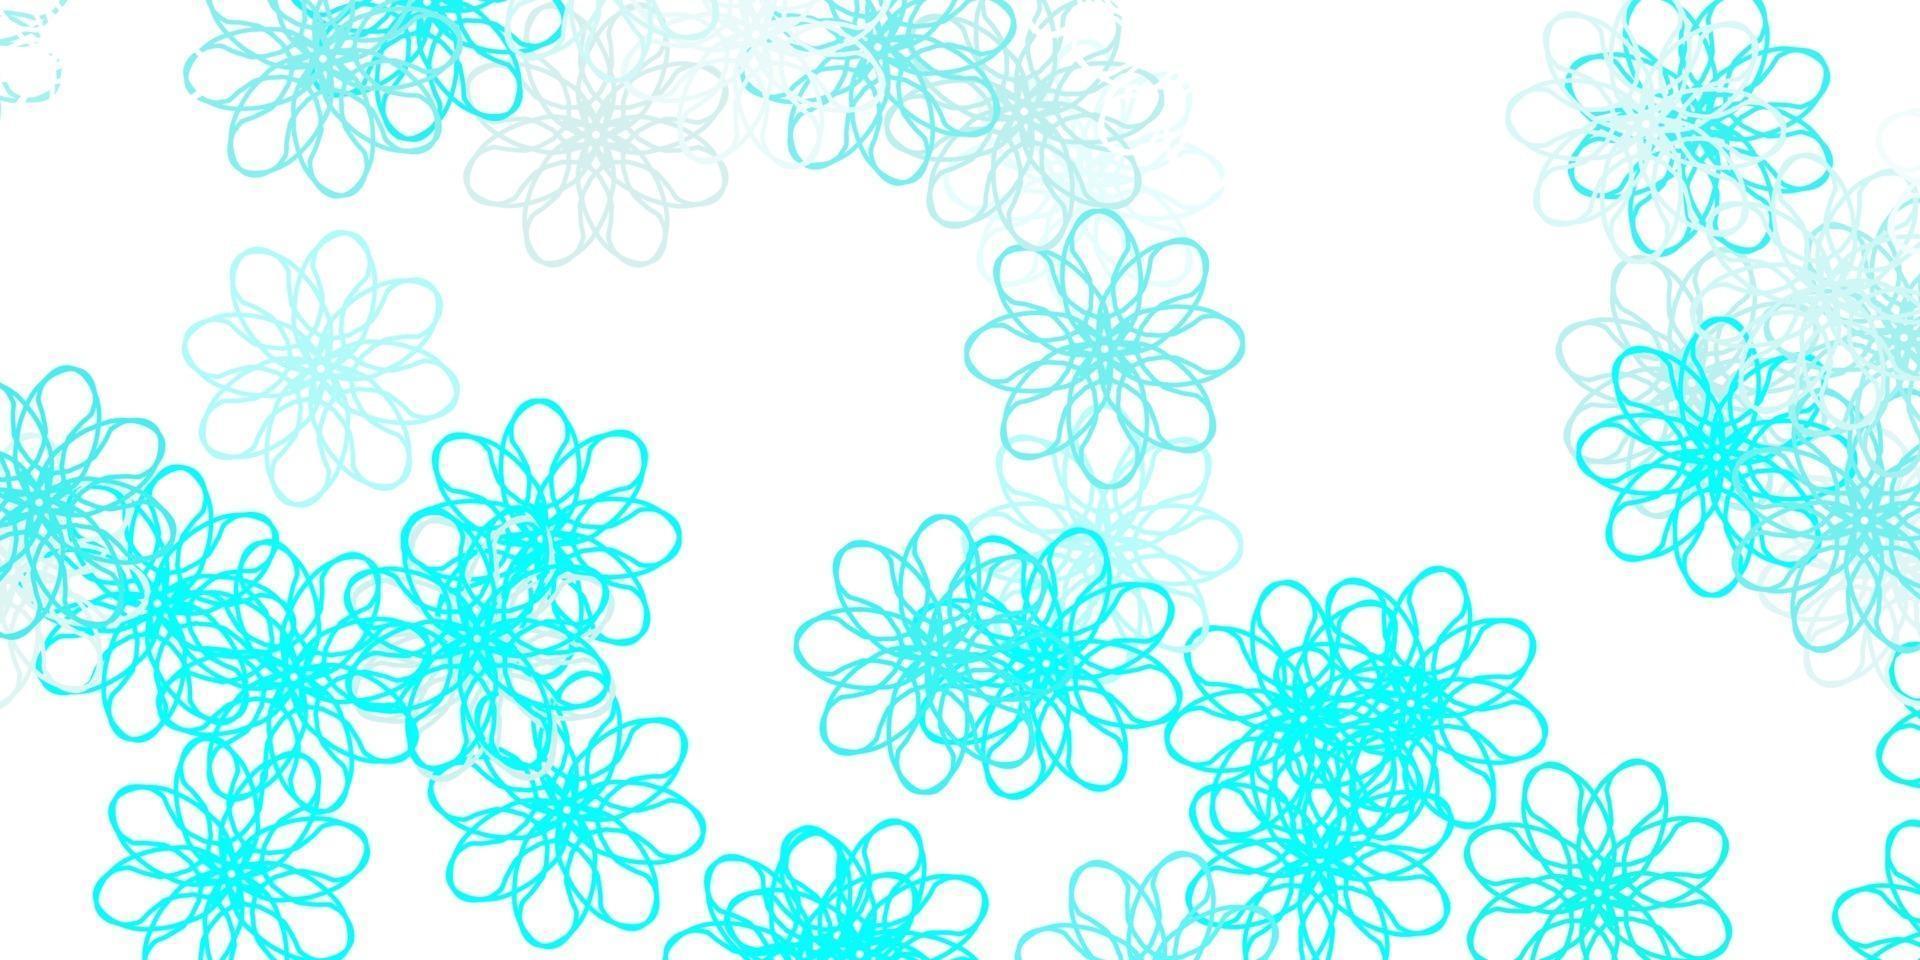 fundo do doodle do vetor azul e verde claro com flores.